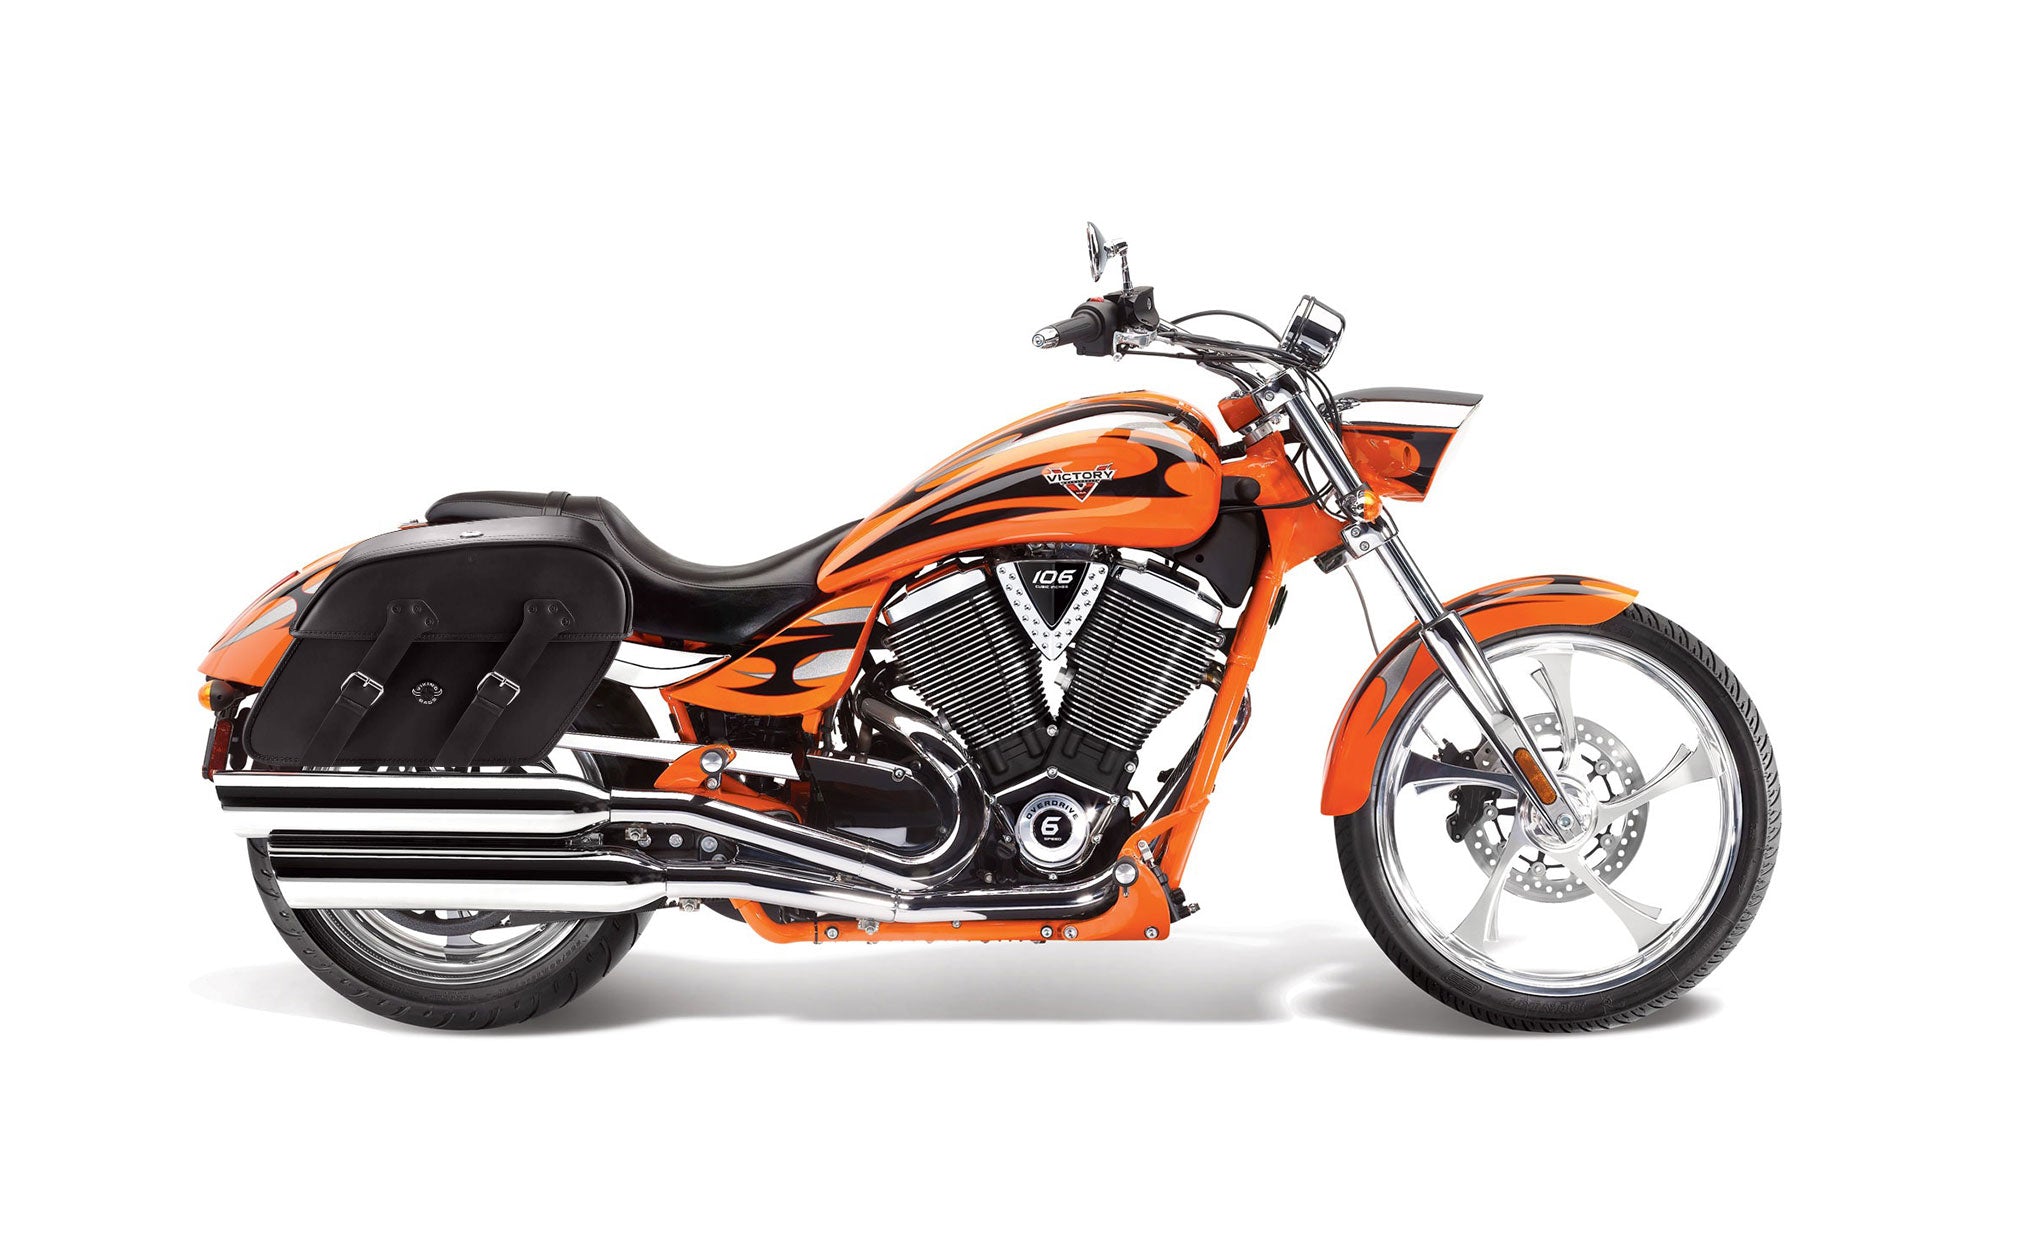 Viking Raven Extra Large Victory Jackpot Leather Motorcycle Saddlebags on Bike Photo @expand